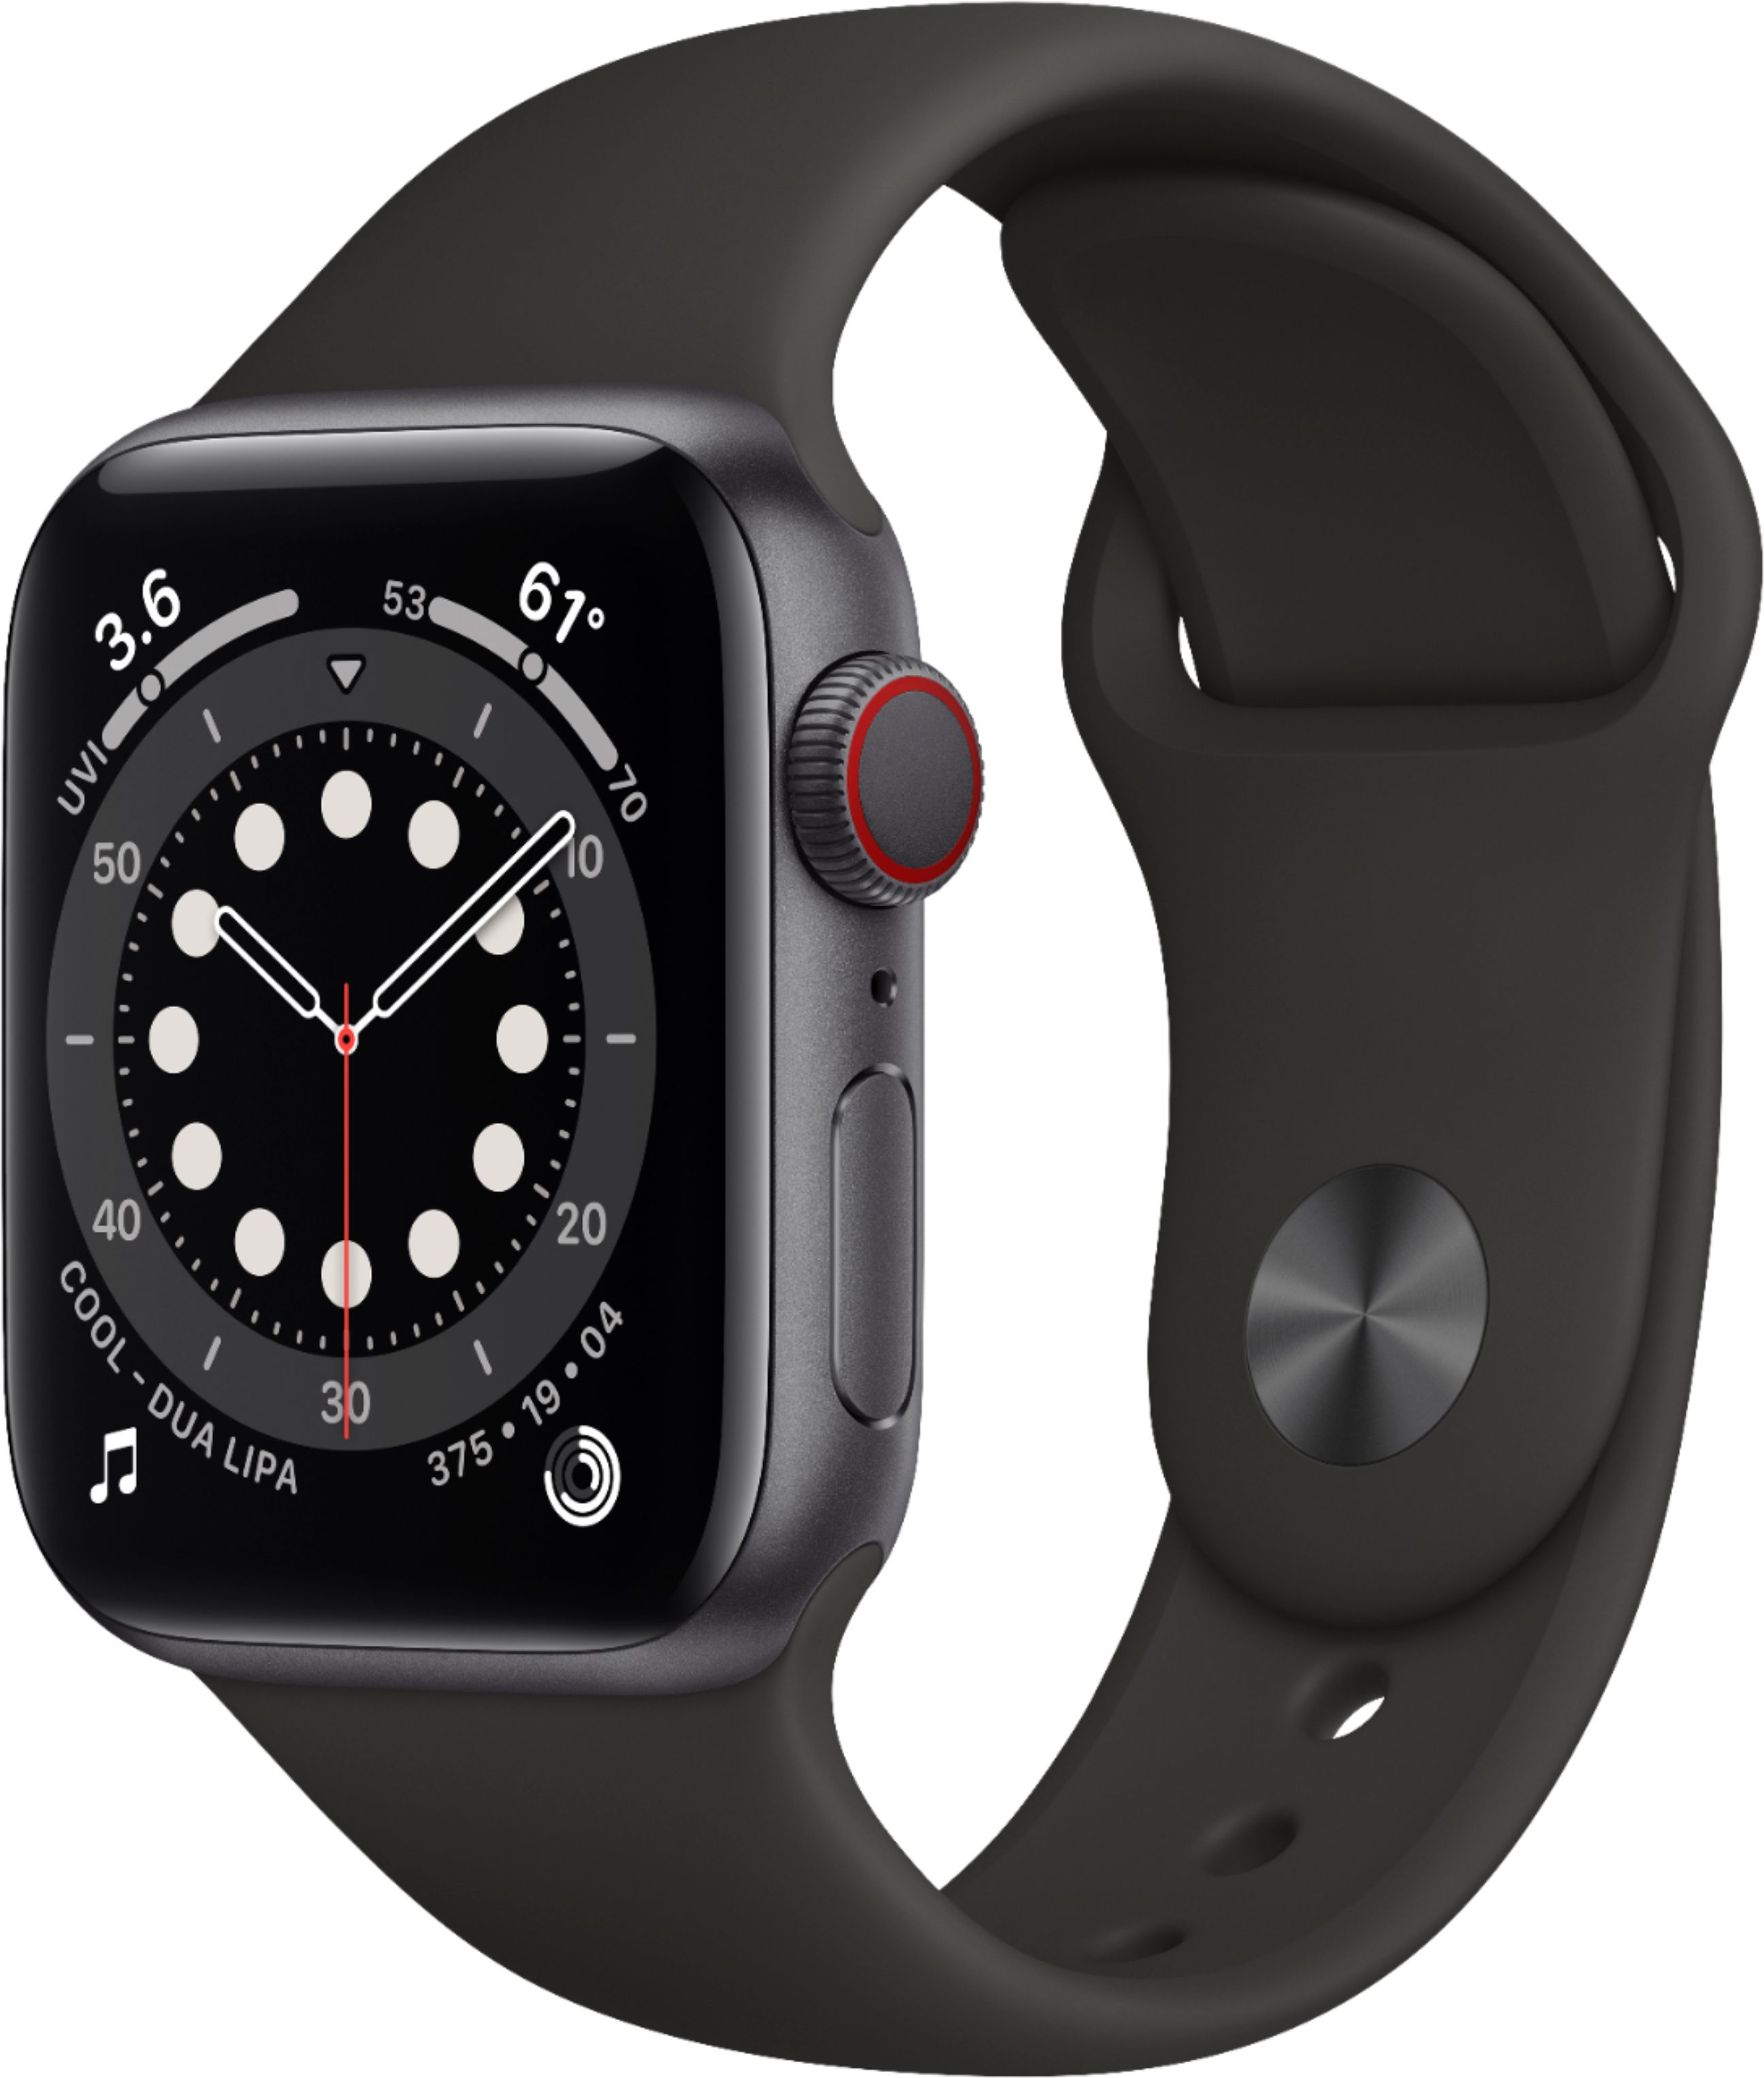 Apple Watch Series 4(GPSモデル) 40mmスペースグレイ